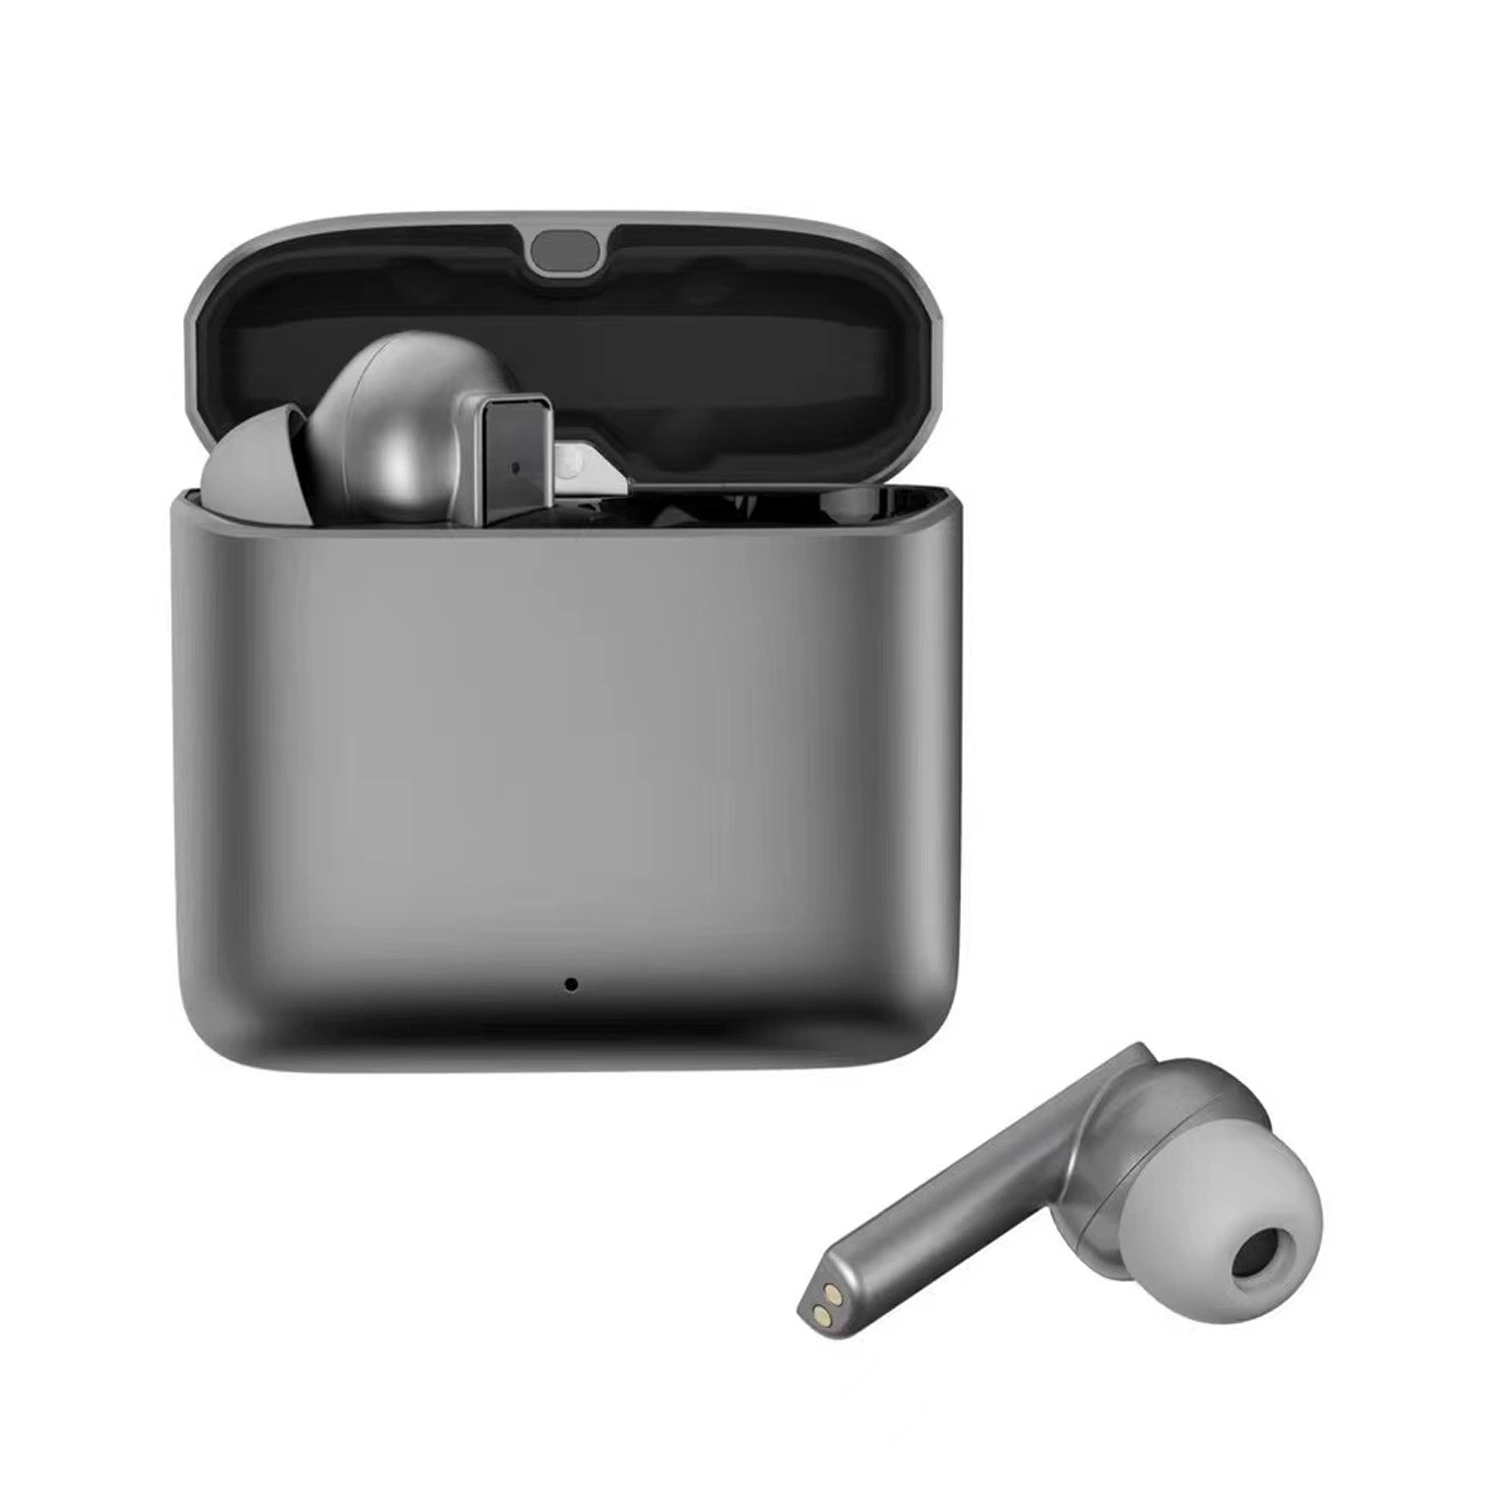 IPX5 Waterproof Metal Case True Wireless Earbuds TWS Bluetooth Earphone